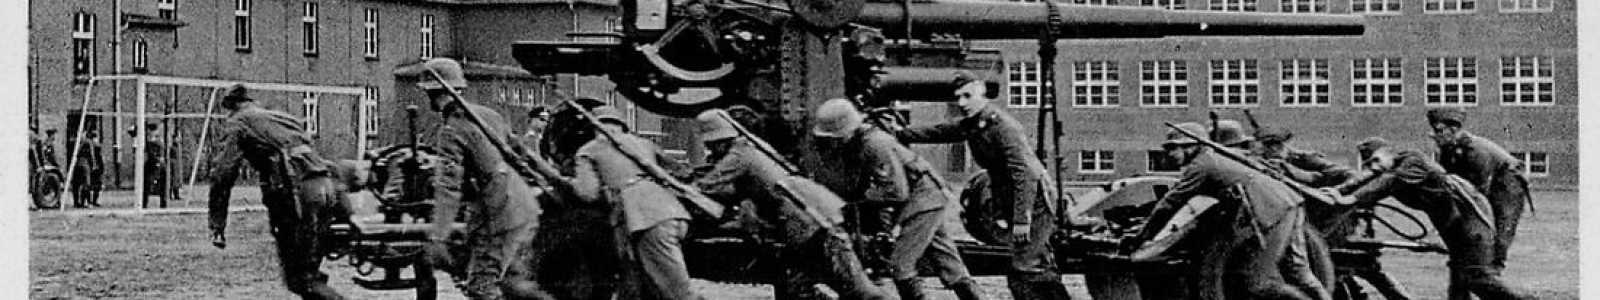 O82r - Tag 2: Deutsche Zeitgeschichte - Orden und Militaria ab 1919